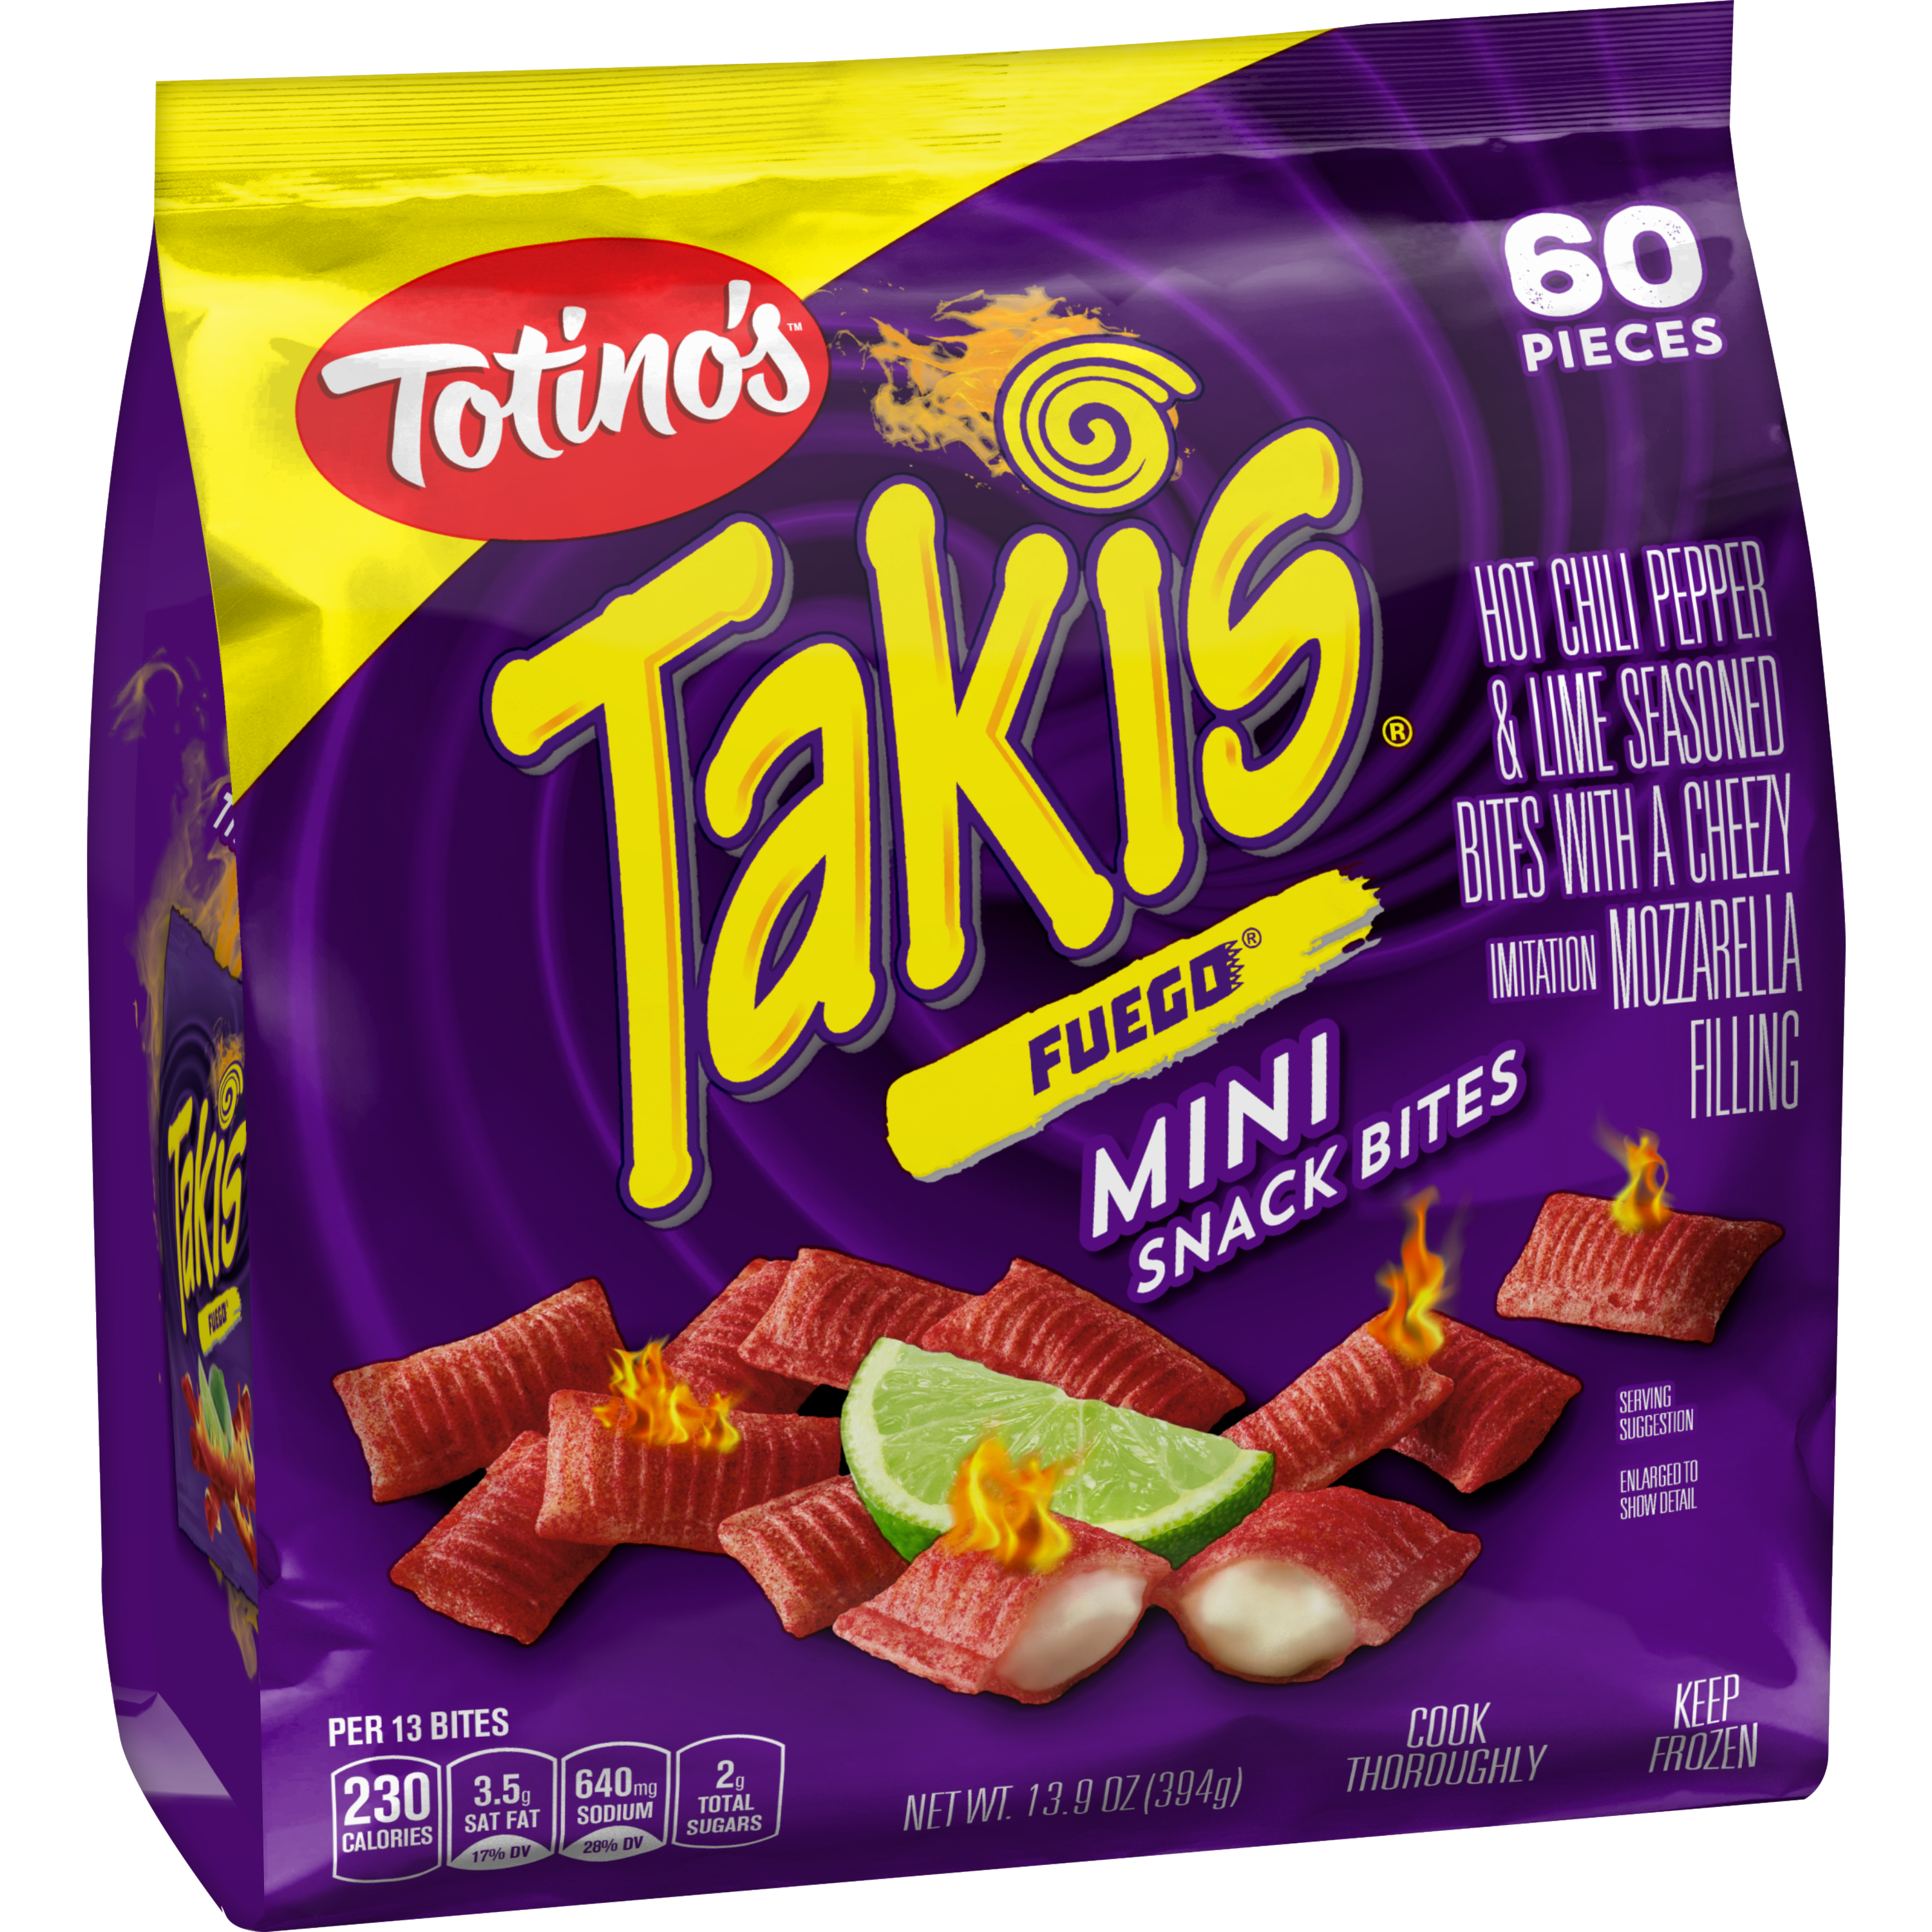 Totino's Takis fuego mini snack bites